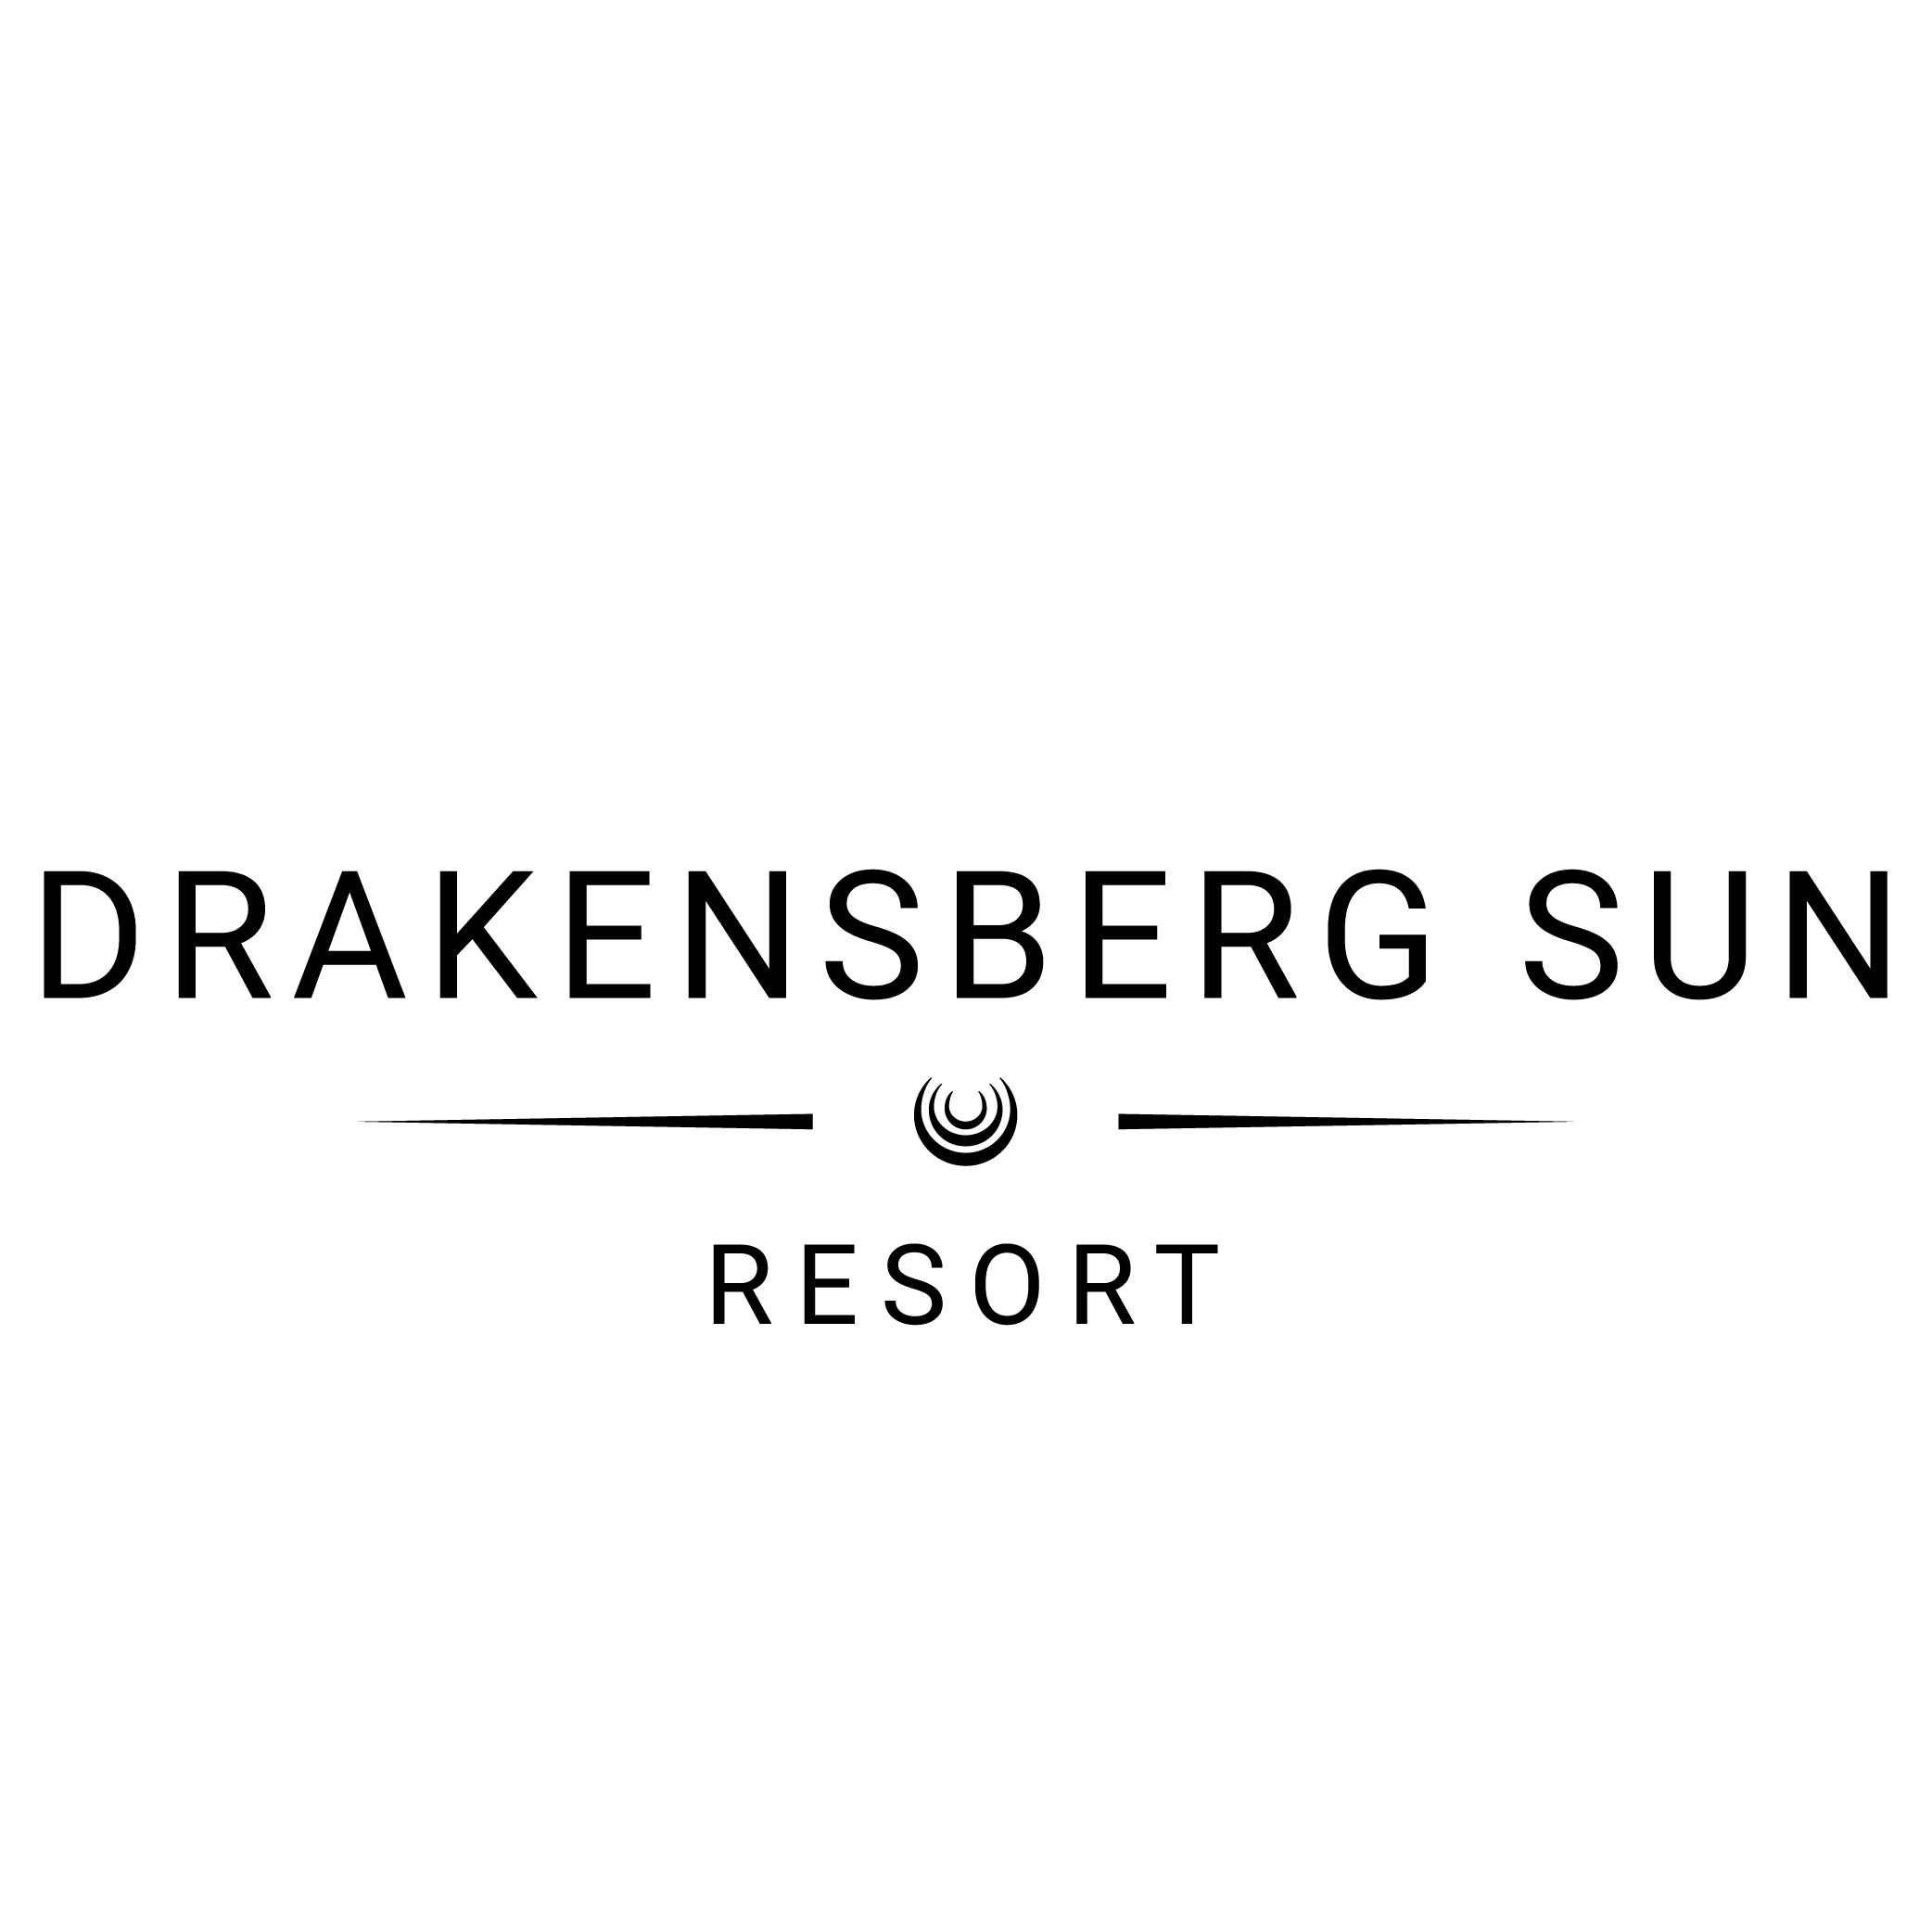 drakenberg sun resort logo